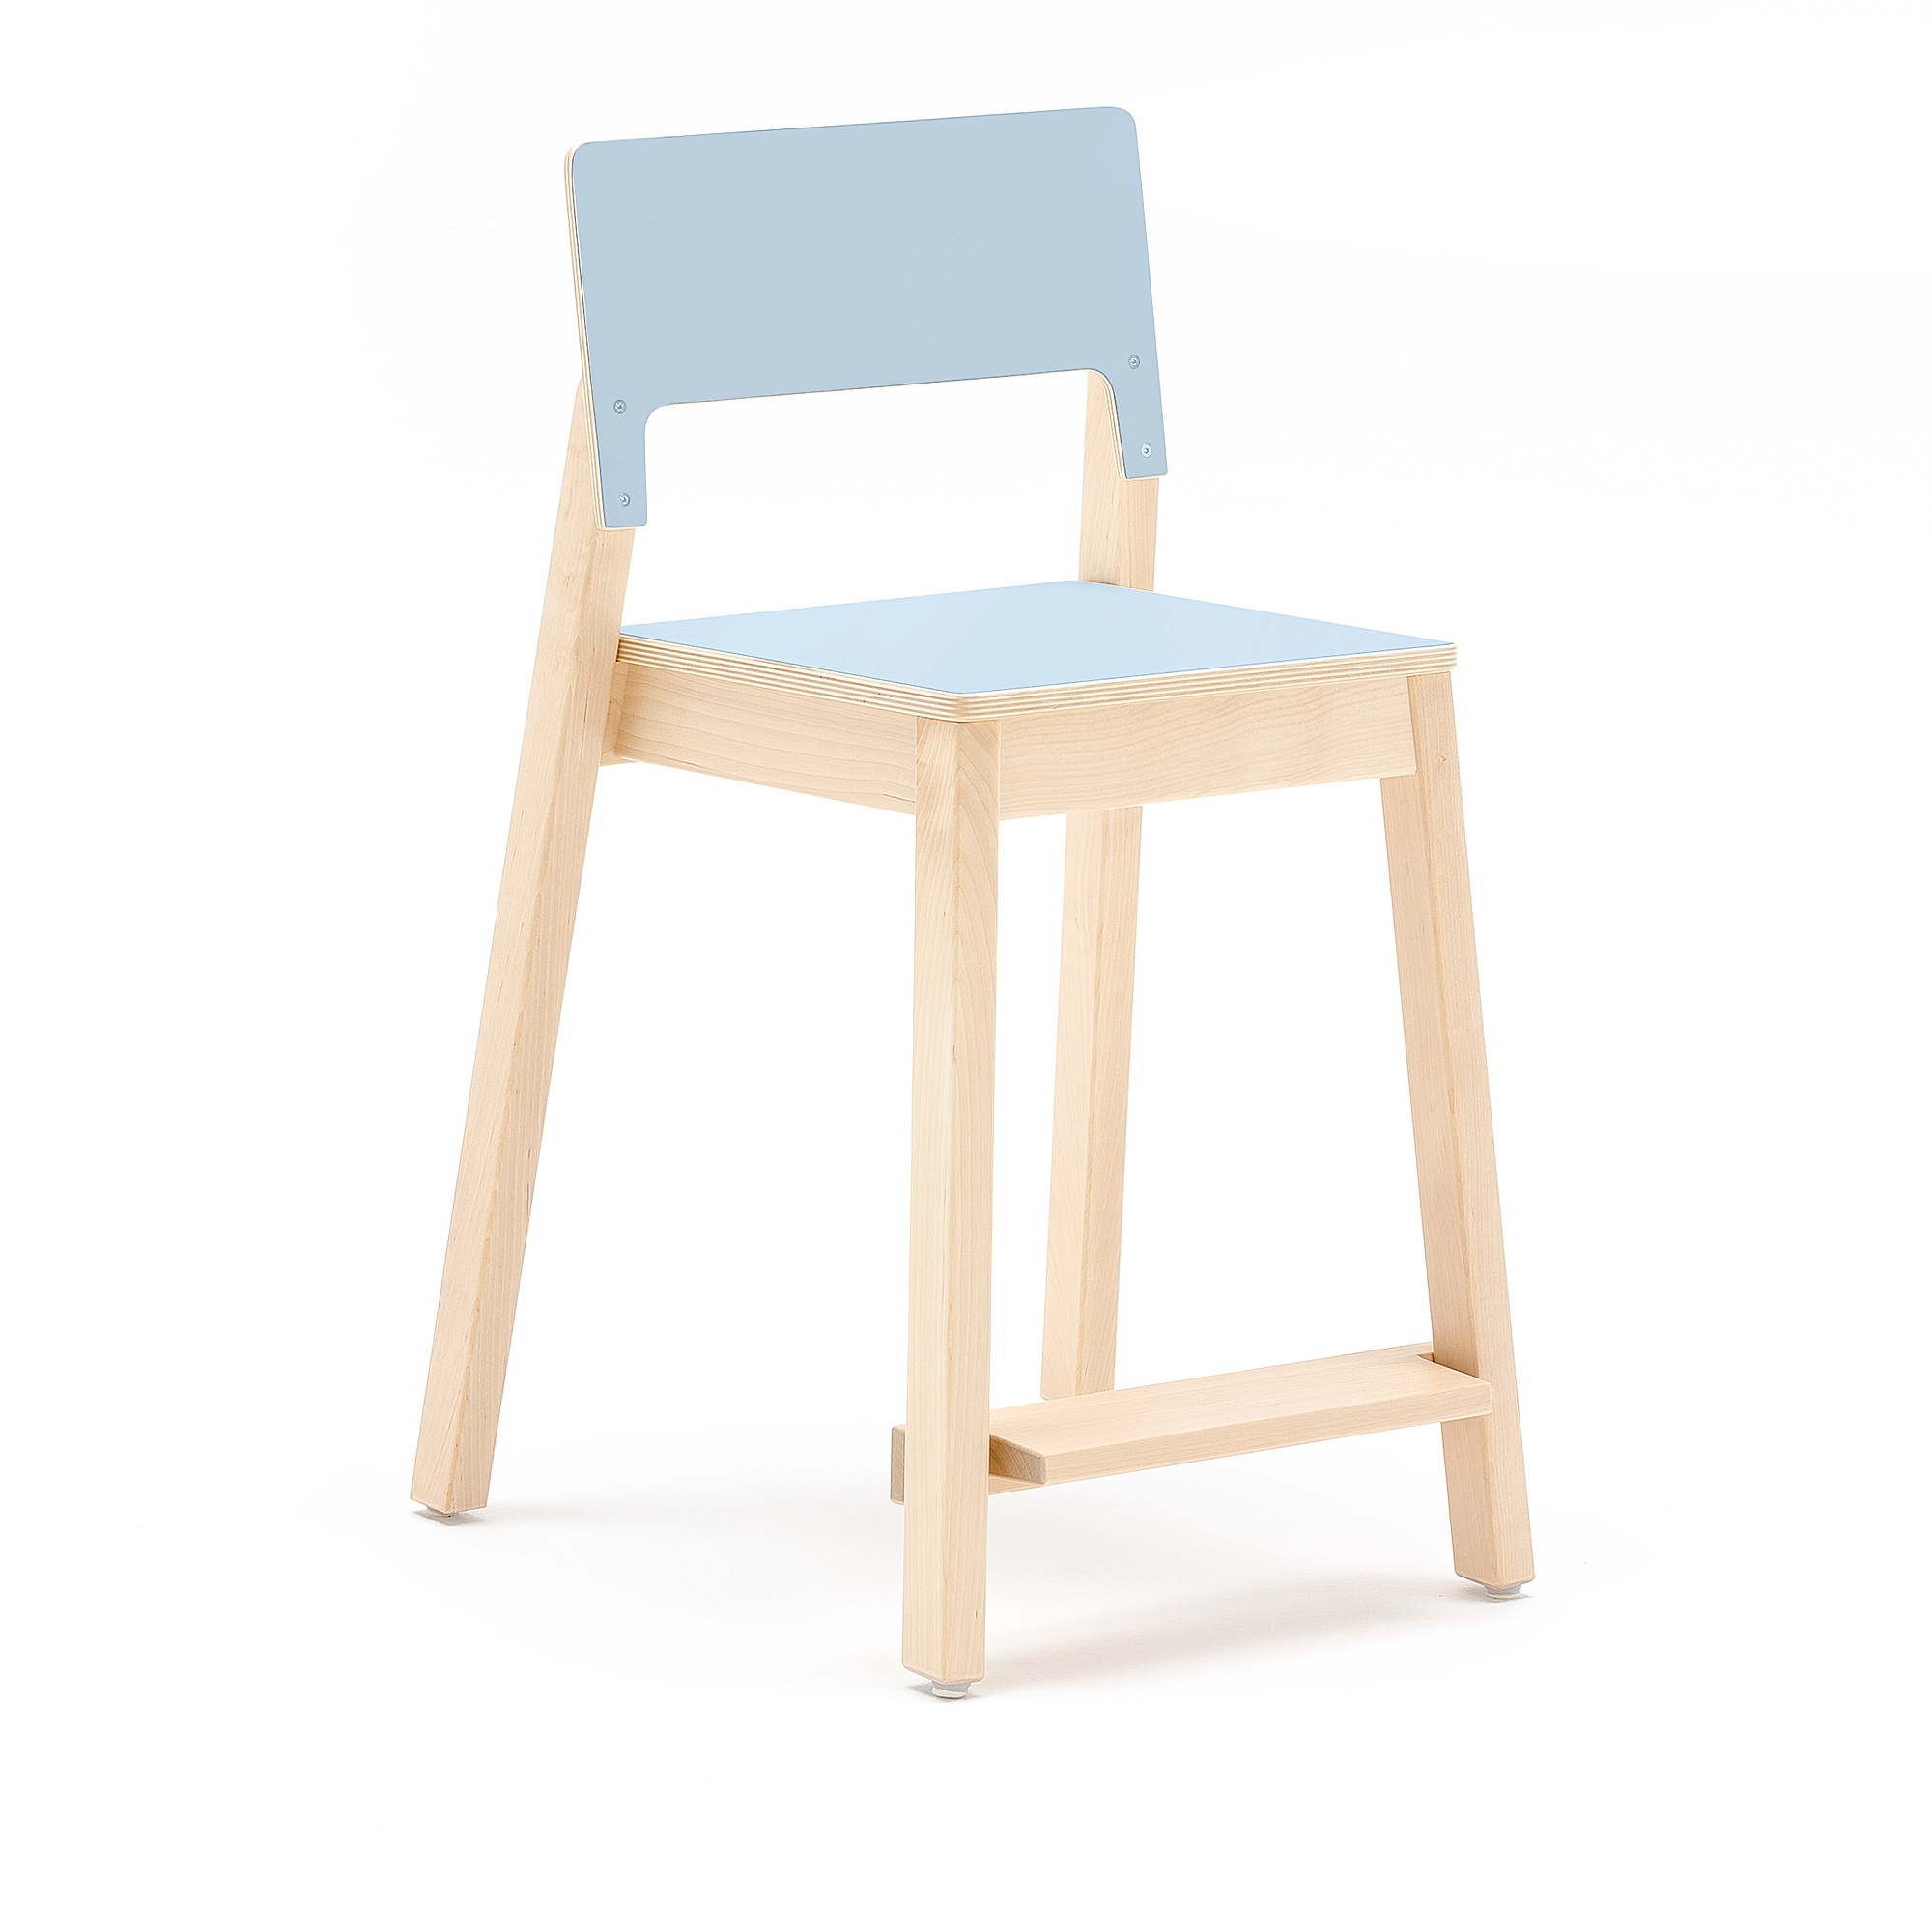 Vysoká dětská židle LOVE, výška 500 mm, bříza, modrá